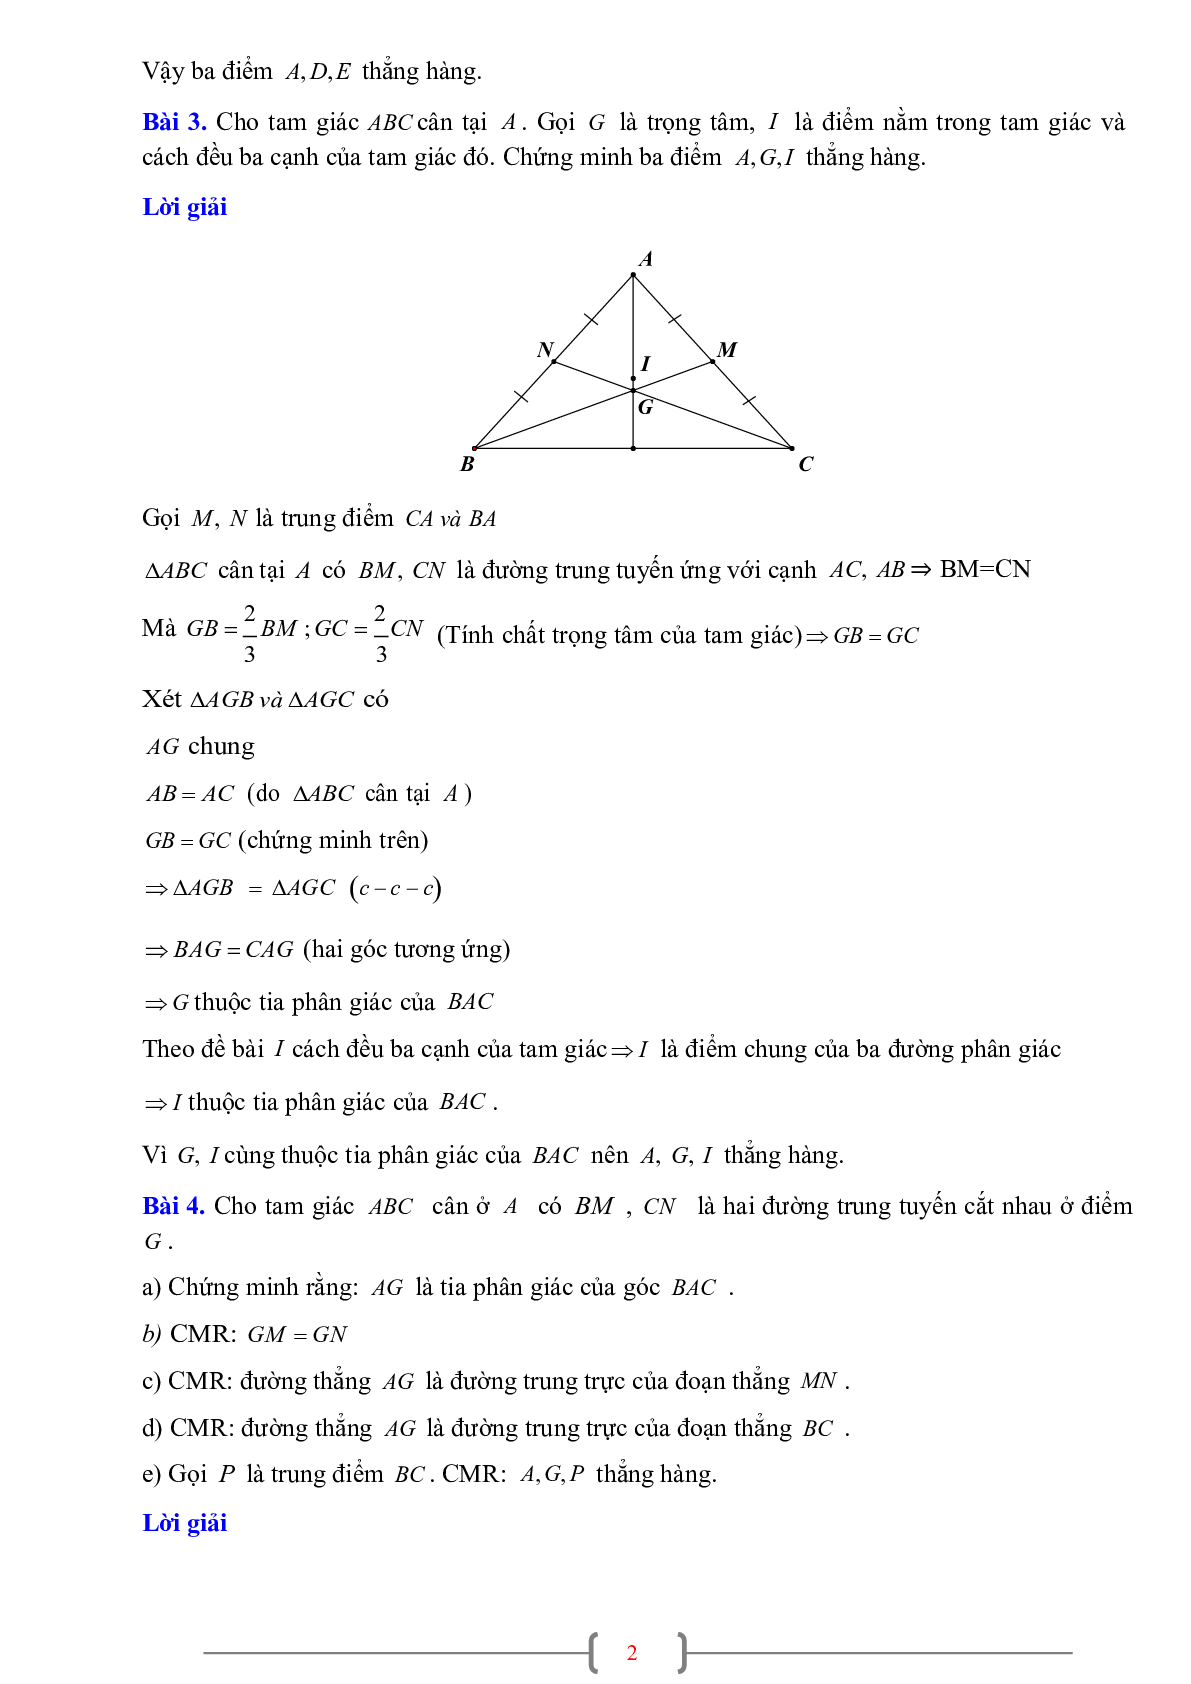 70 Bài tập về Sự đồng quy của ba đường phân giác trong một tam giác (có đáp án năm 2024) - Toán 7 (trang 8)